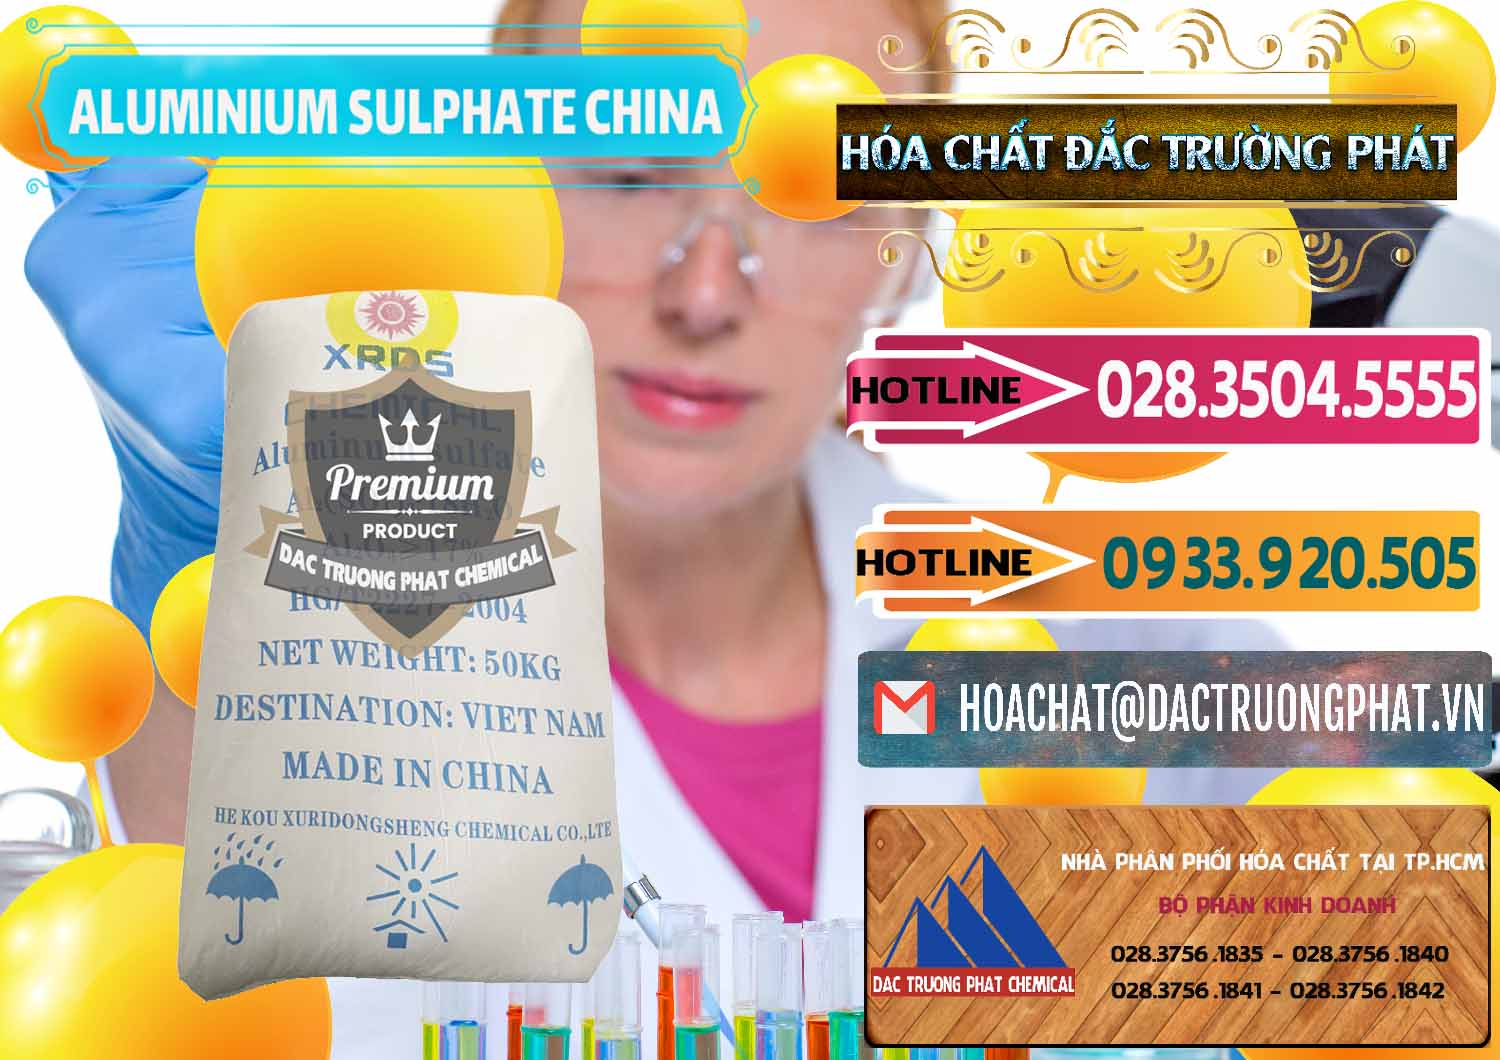 Cty bán ( cung cấp ) Phèn Nhôm - Al2(SO4)3 17% Trung Quốc China - 0464 - Chuyên phân phối & nhập khẩu hóa chất tại TP.HCM - dactruongphat.vn